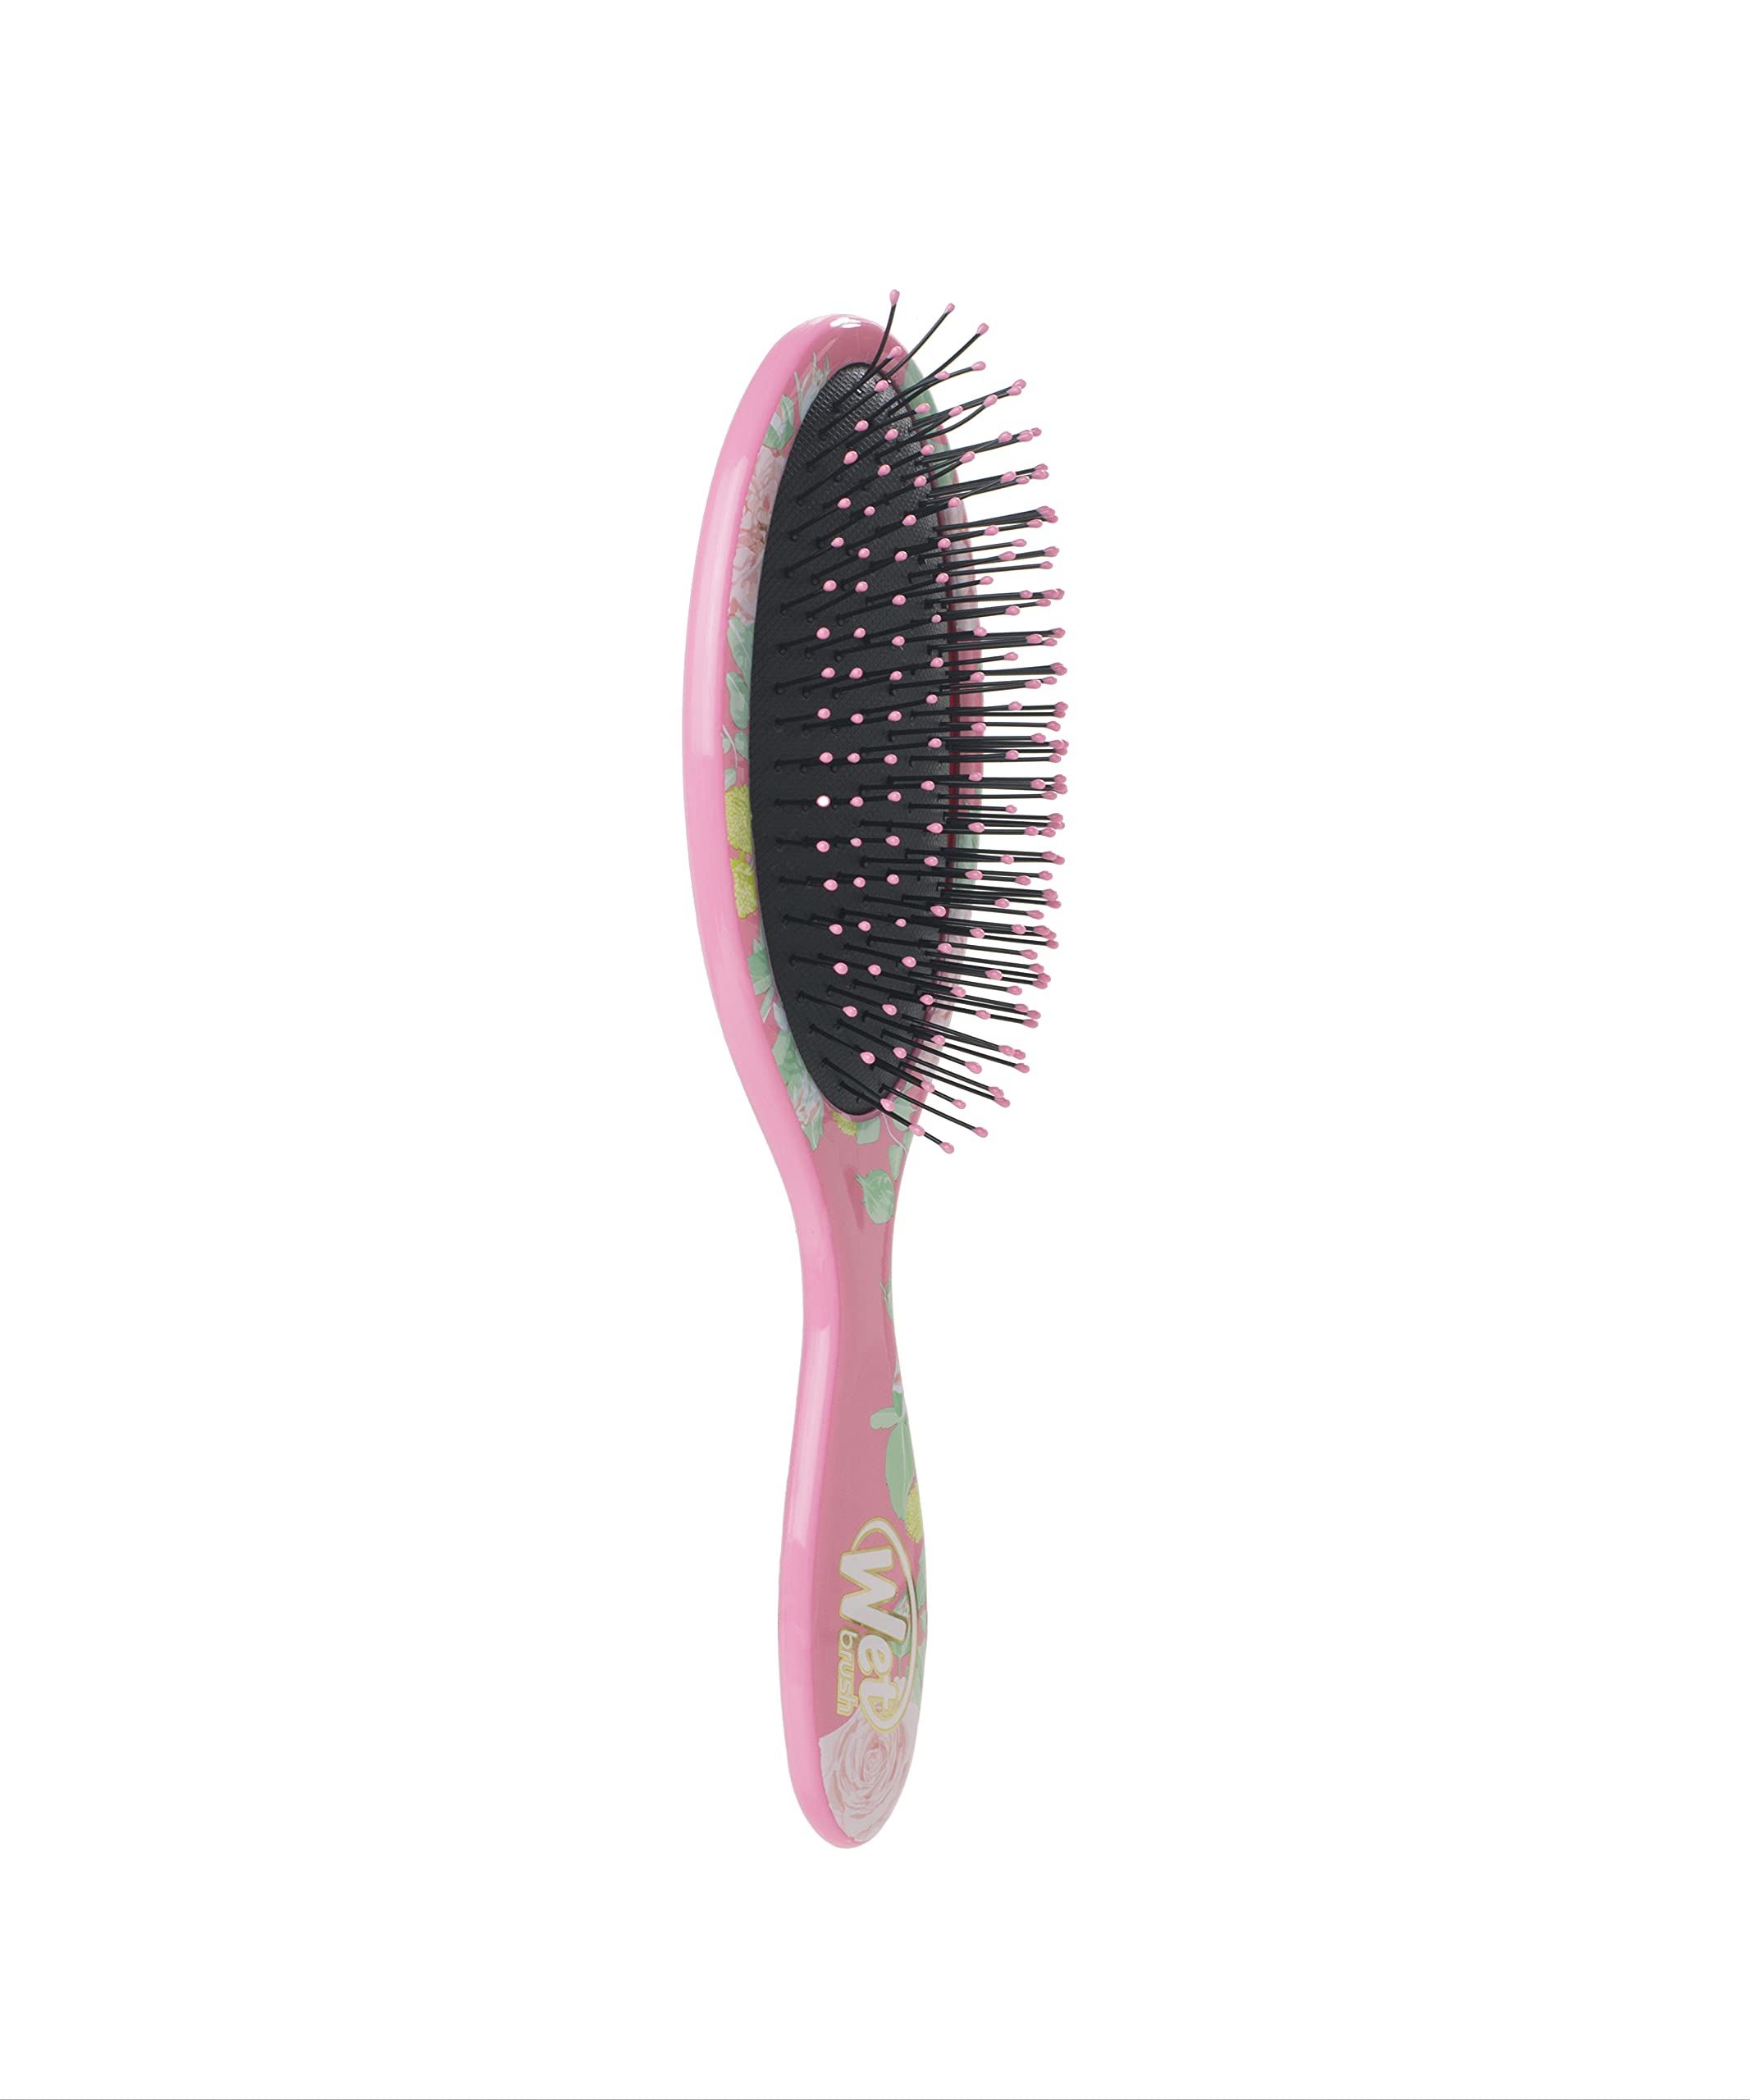 Wet Brush Original Detangler Brush - Bridal Squad - All Hair Types - Ultra-Soft IntelliFlex Bristles Glide Through Tangles with Ease - Pain-Free Comb for Men, Women, Boys & Girls